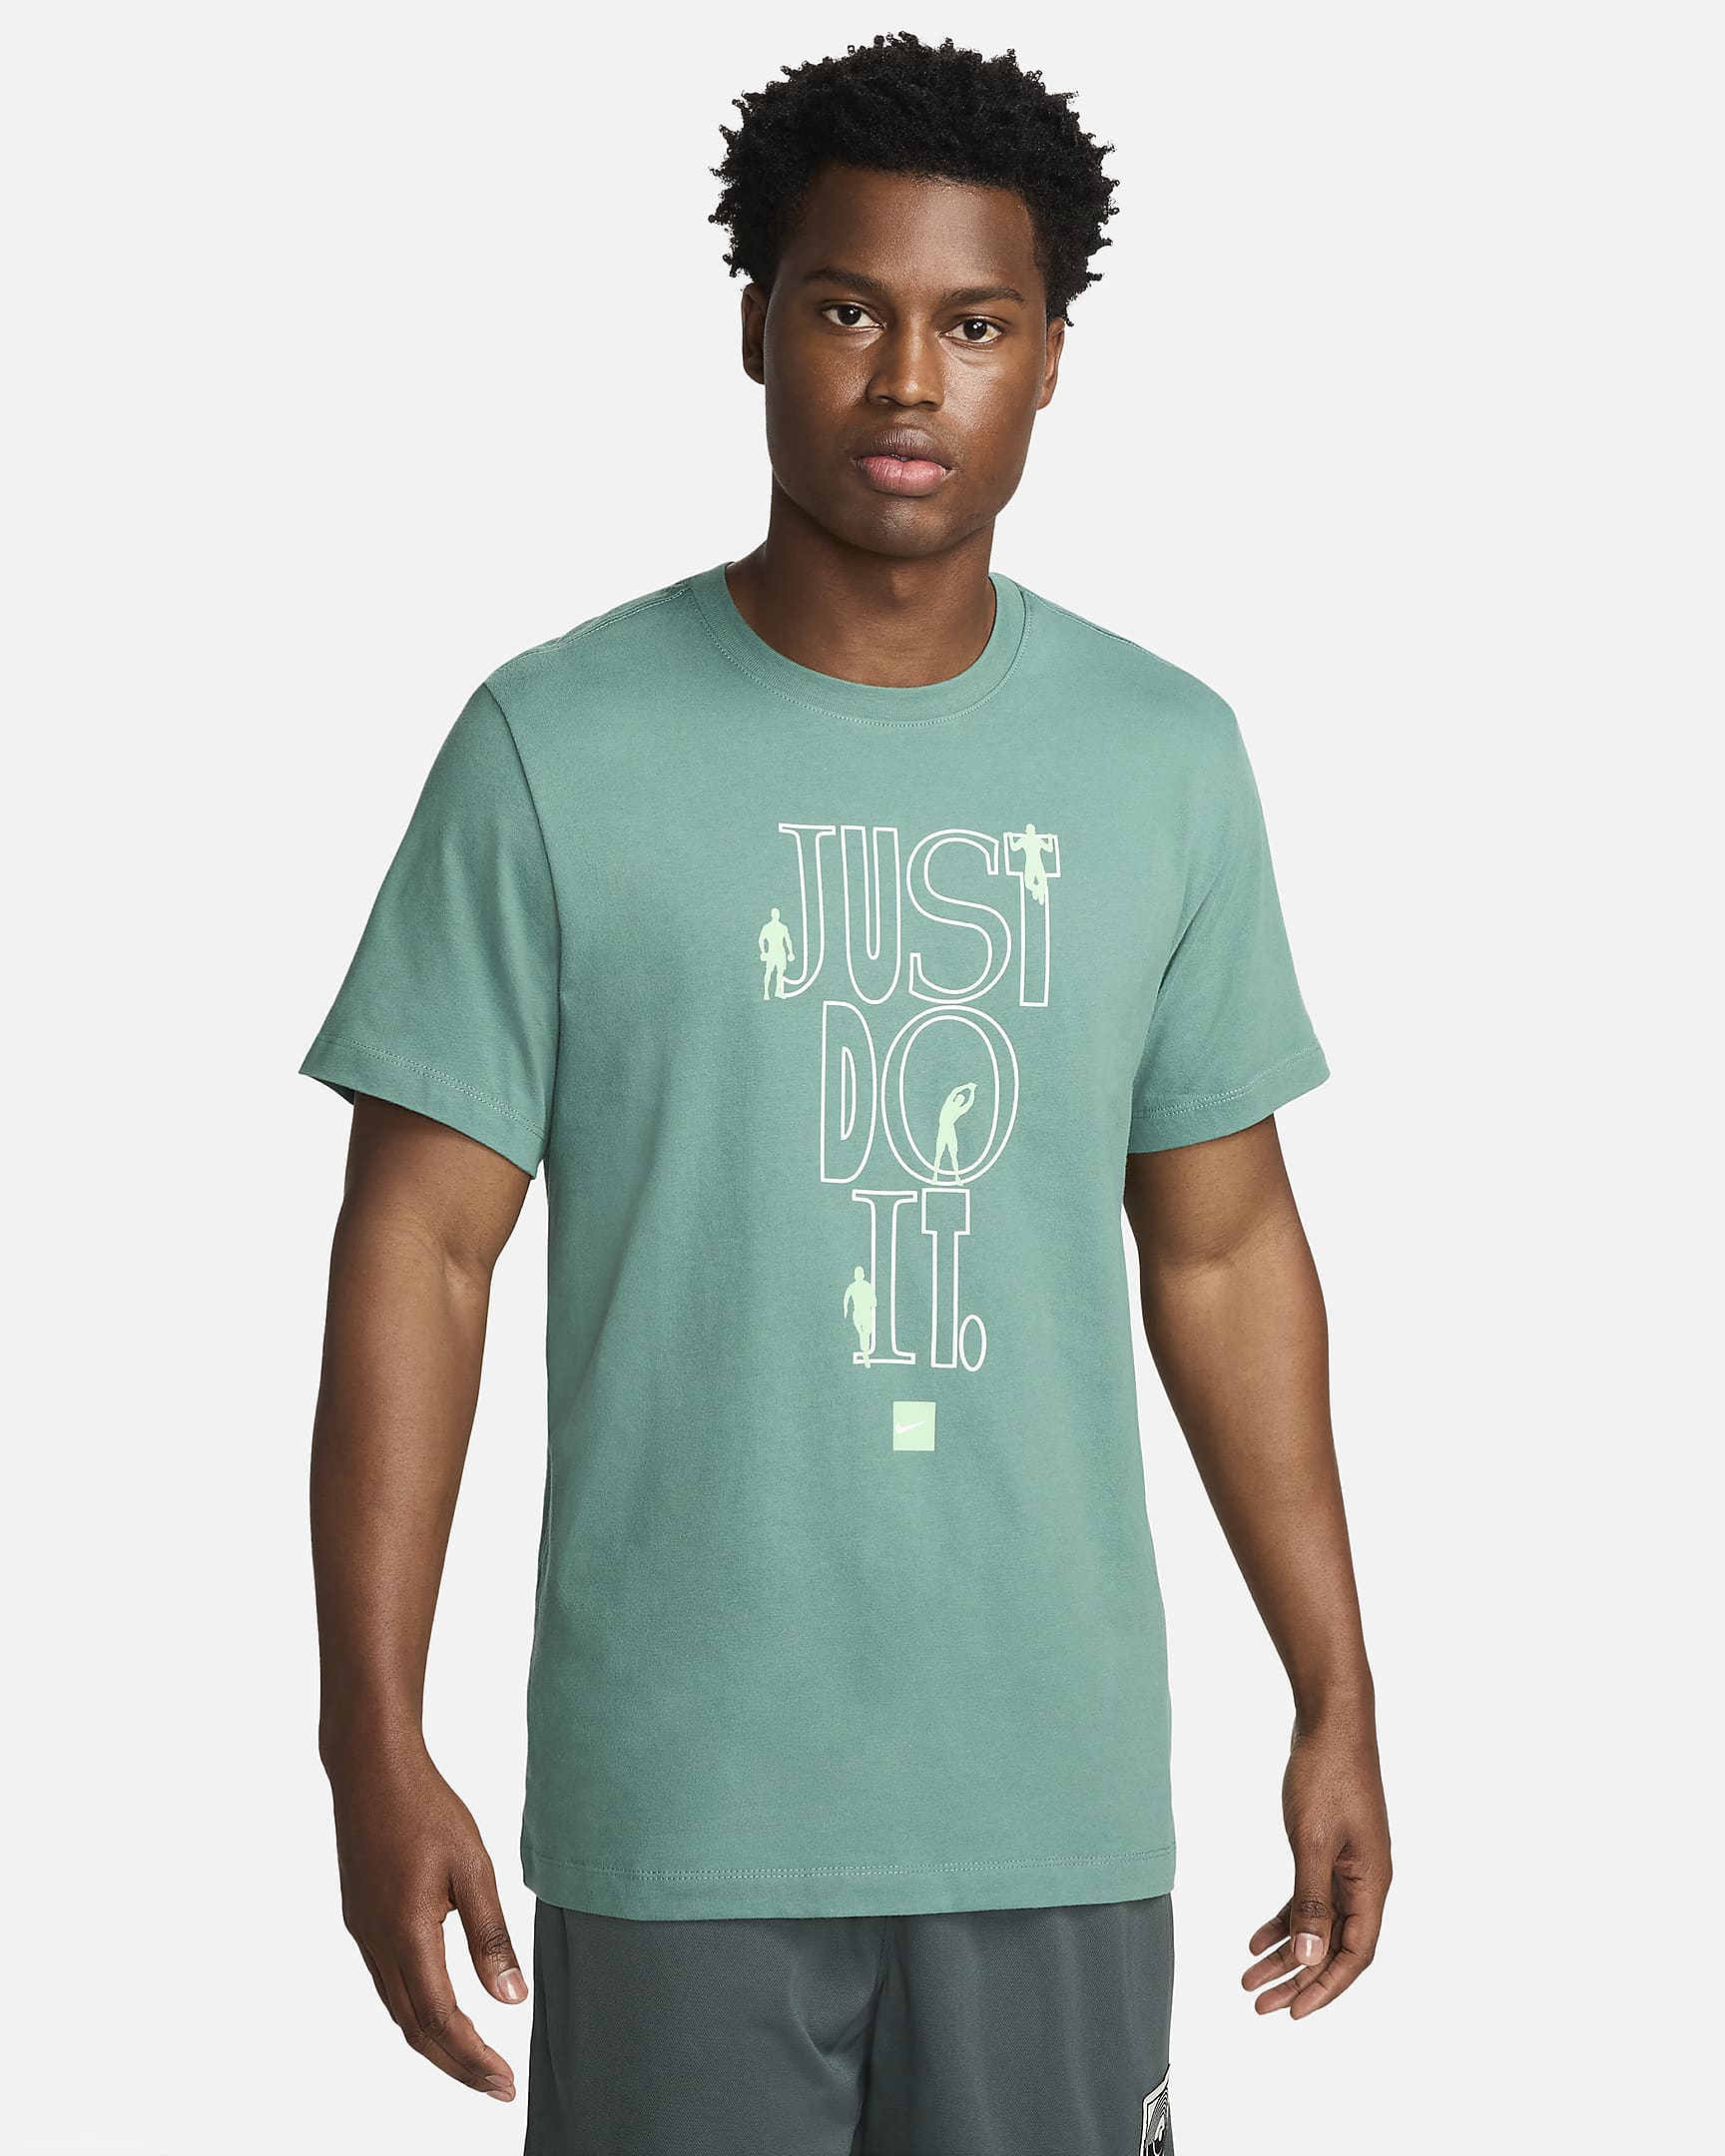 Nike Men's Fitness T-Shirt. Nike RO